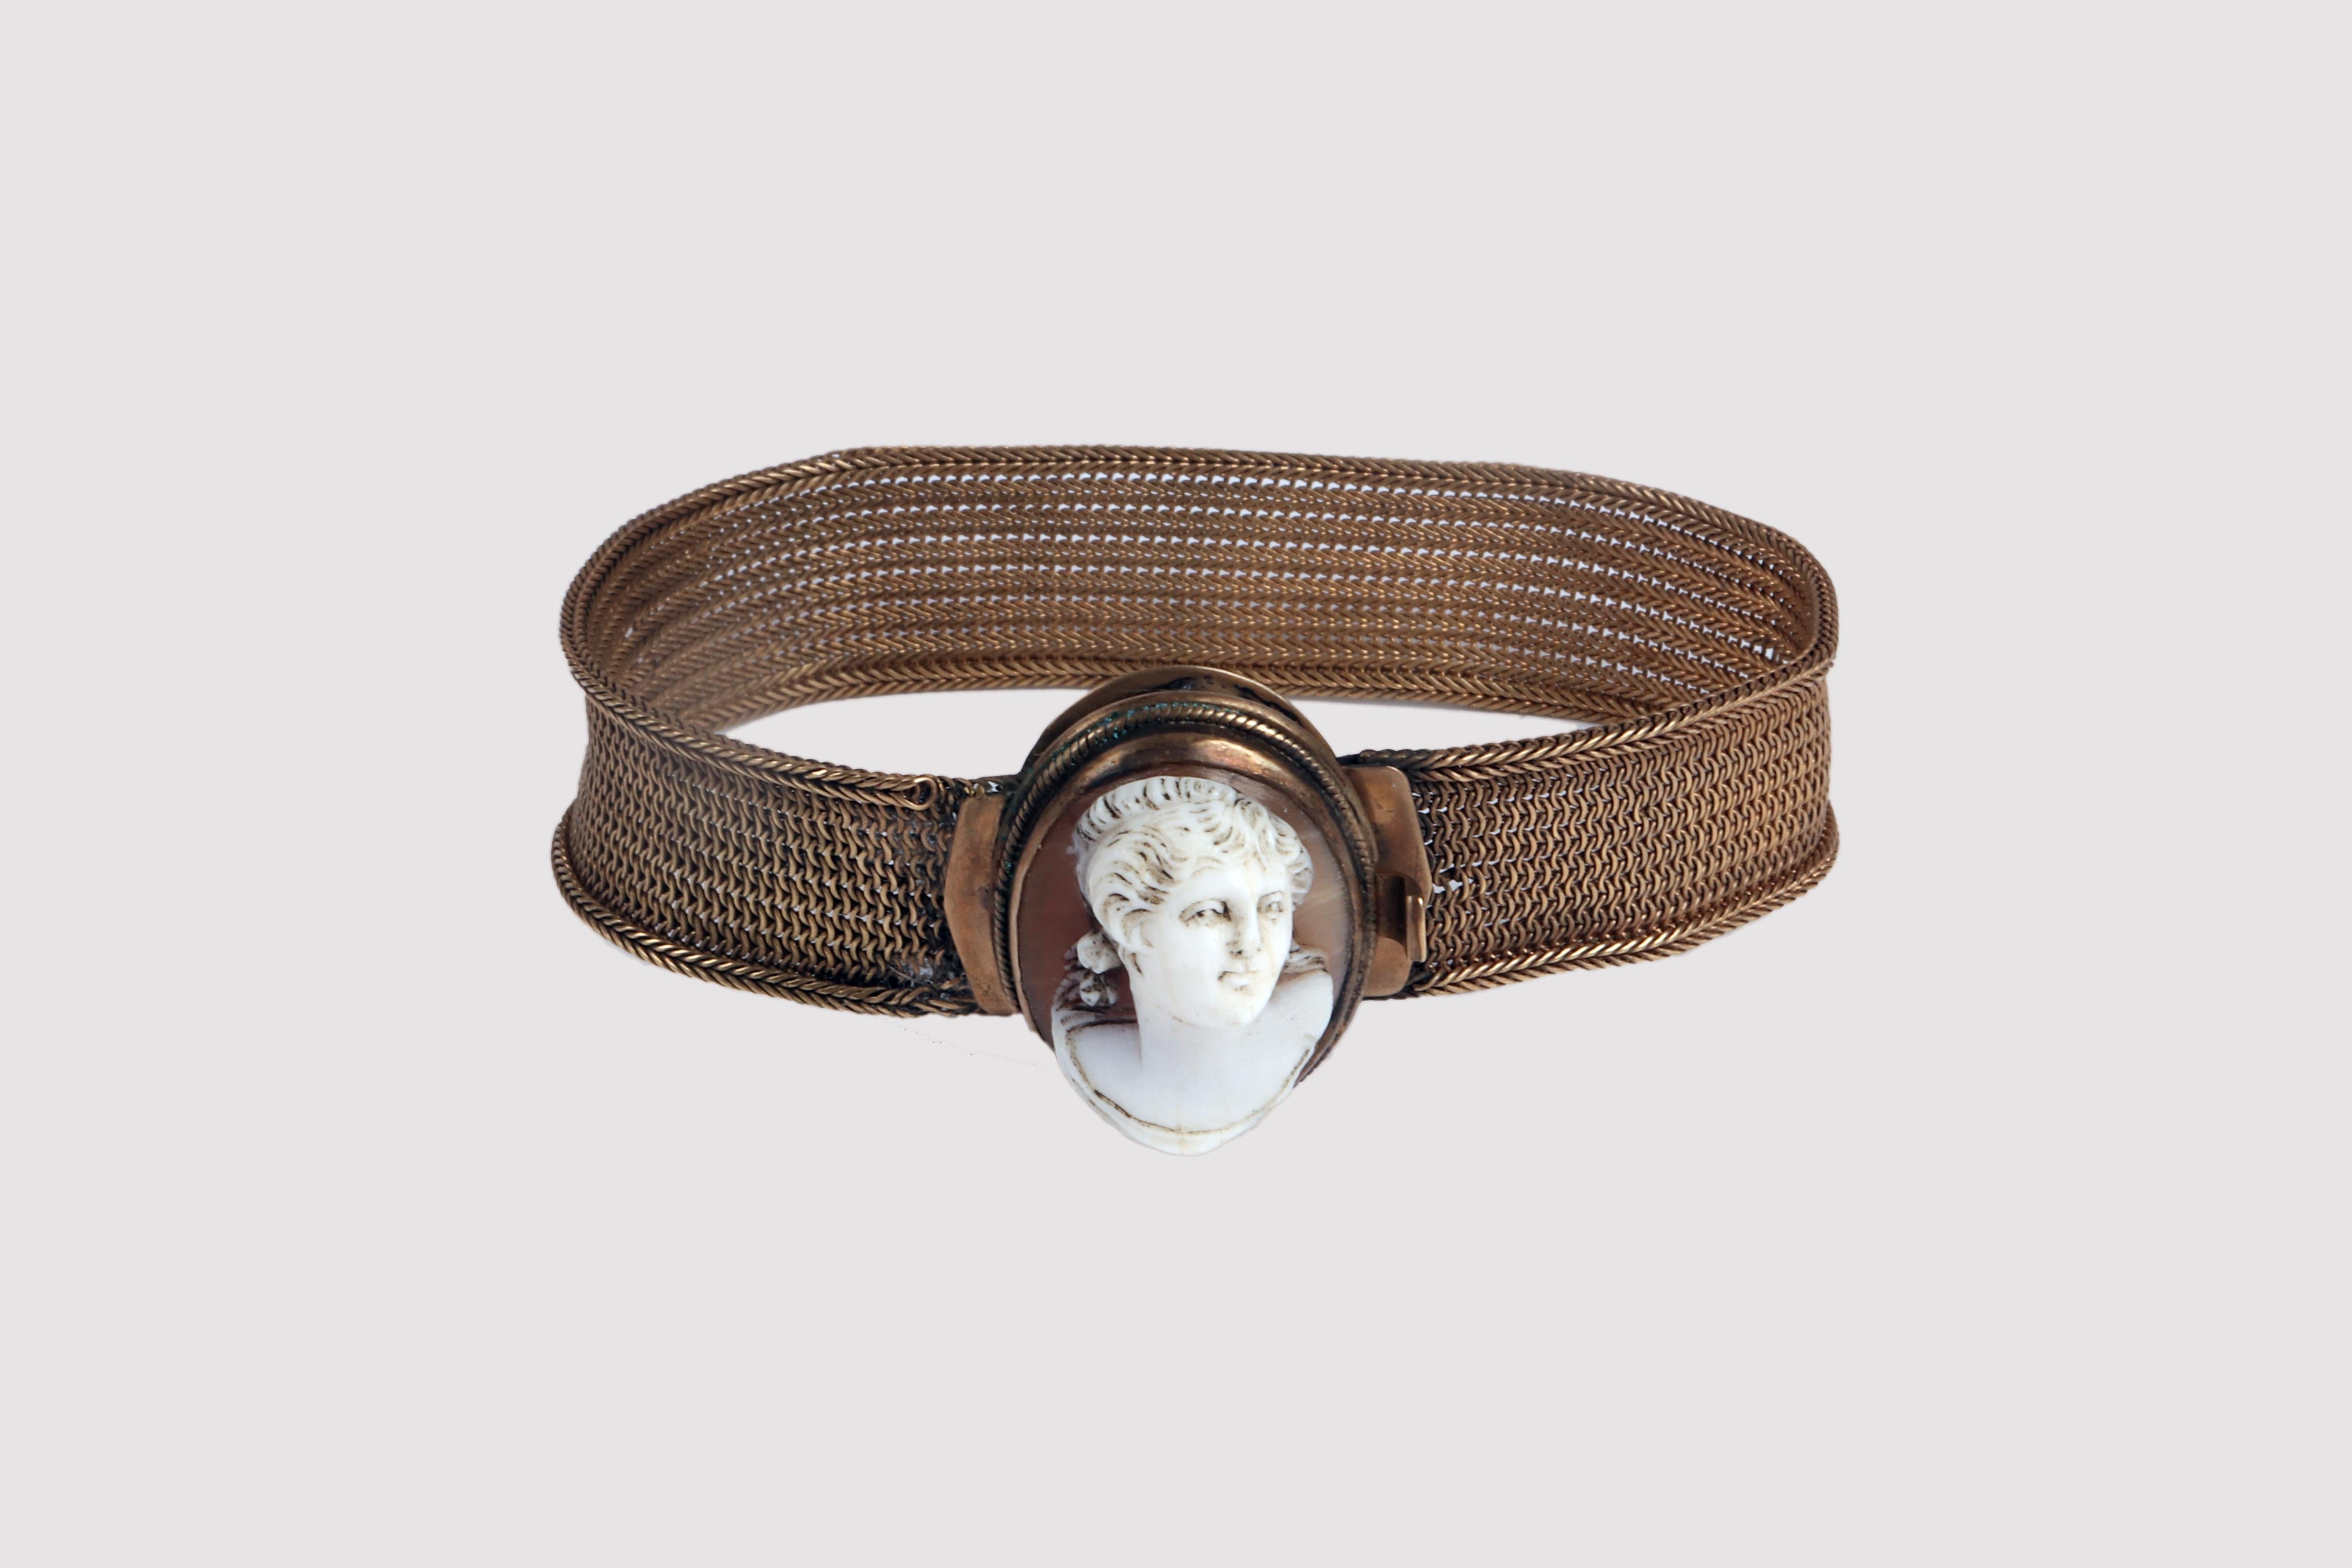 Armband aus der viktorianischen Ära mit Muschelkamee. Das Armband ist mit einem Band aus geflochtenem 12-karätigem Golddraht gefertigt. Die Kanten sind mit einem durchgehenden Fischgrätenmuster verstärkt. Der Verschluss besteht aus einem ovalen,